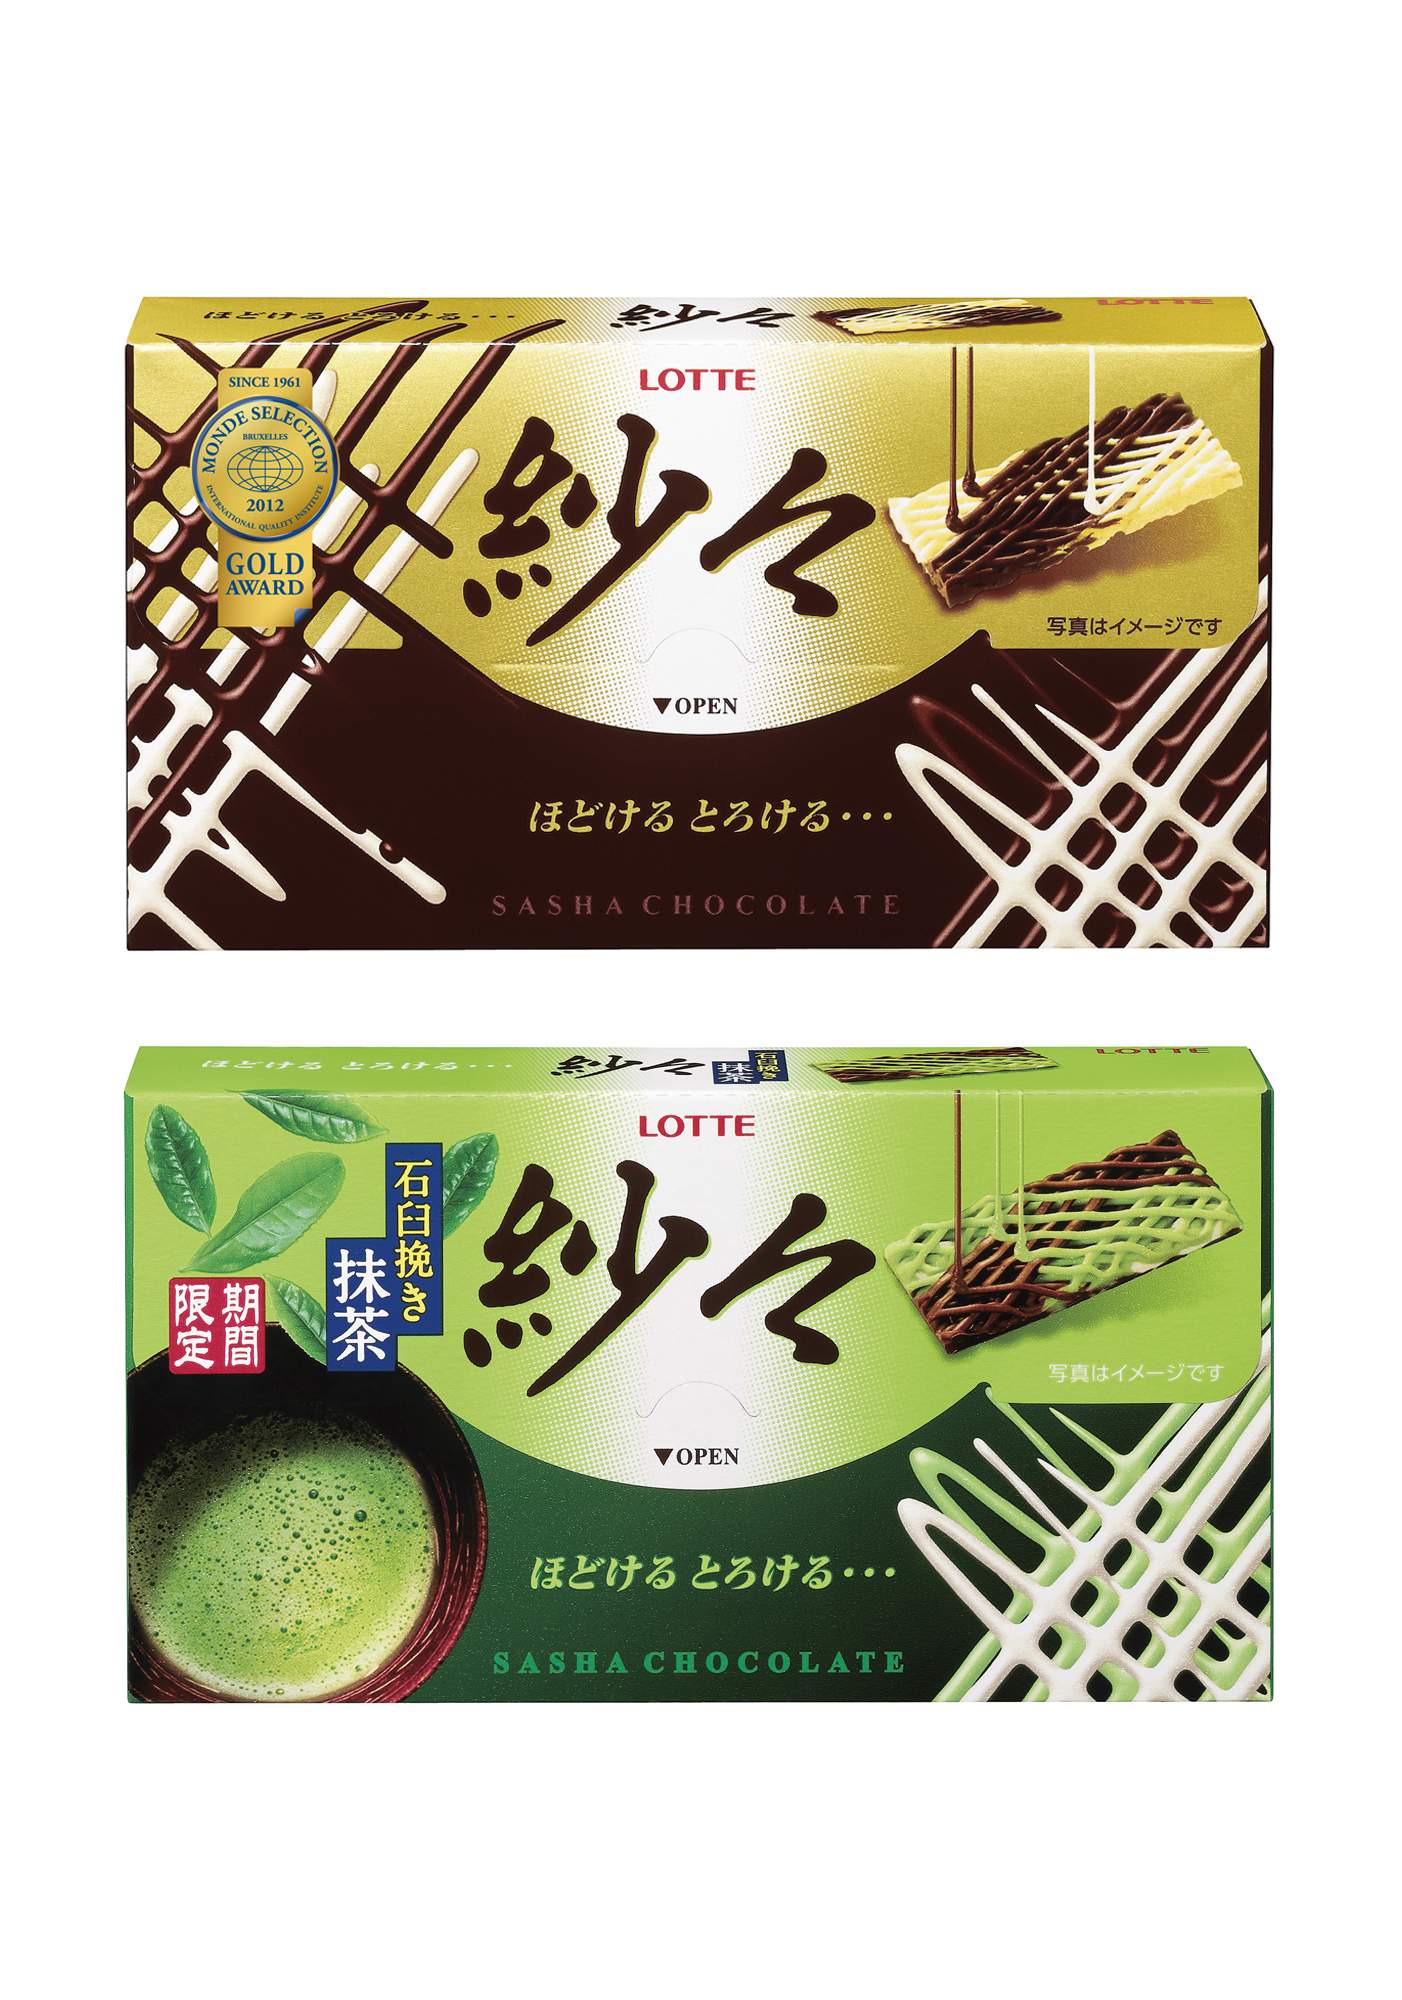 紗々 紗々 石臼挽き抹茶 2012年9月11日 火 から全国で発売